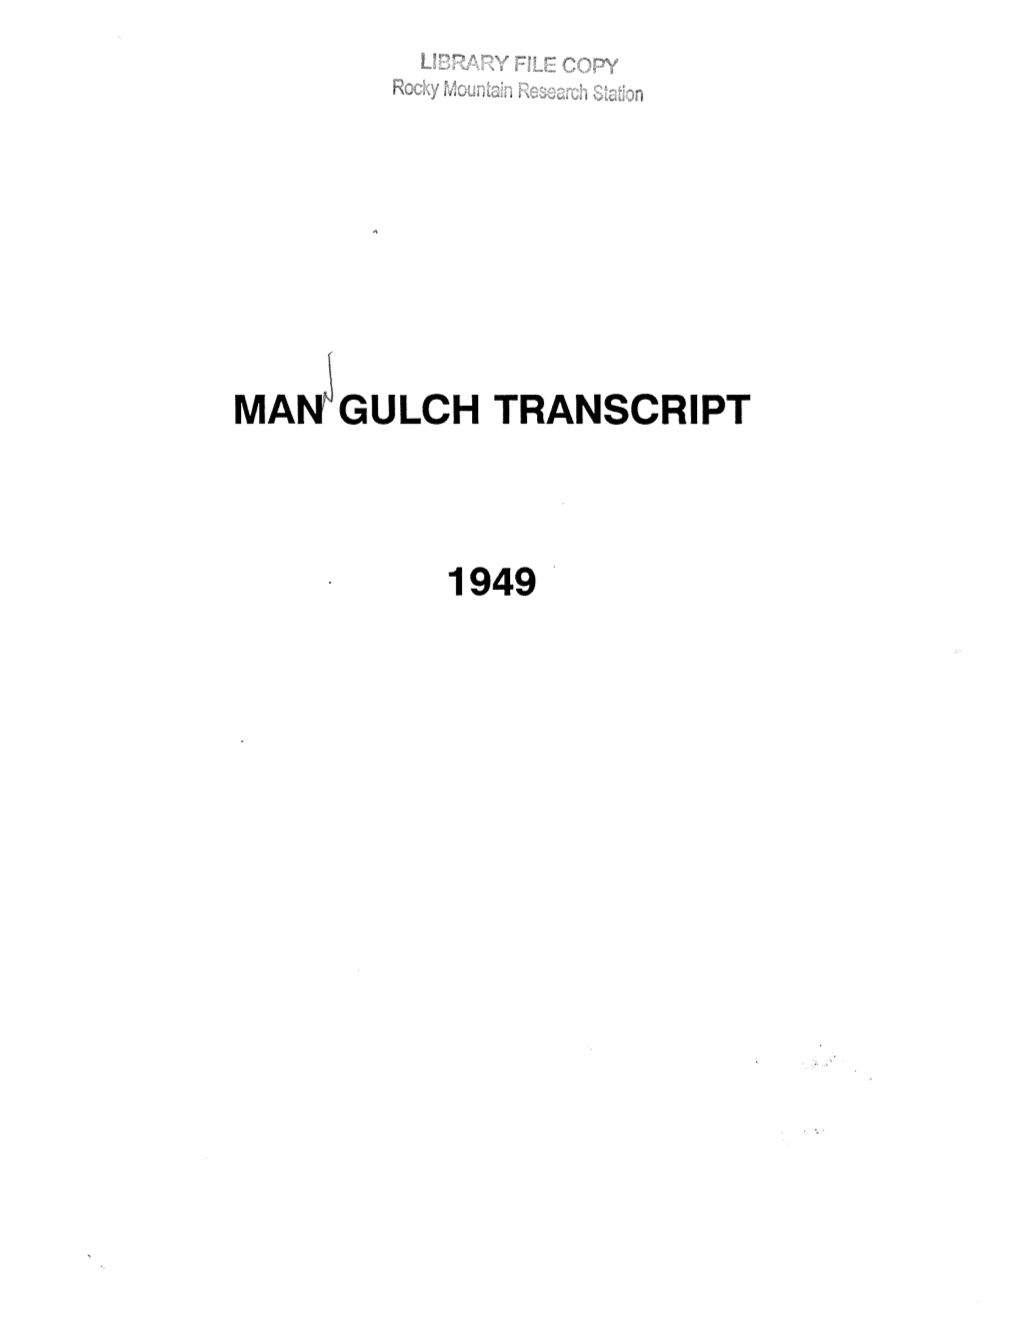 Mann Gulch Transcript, 1949